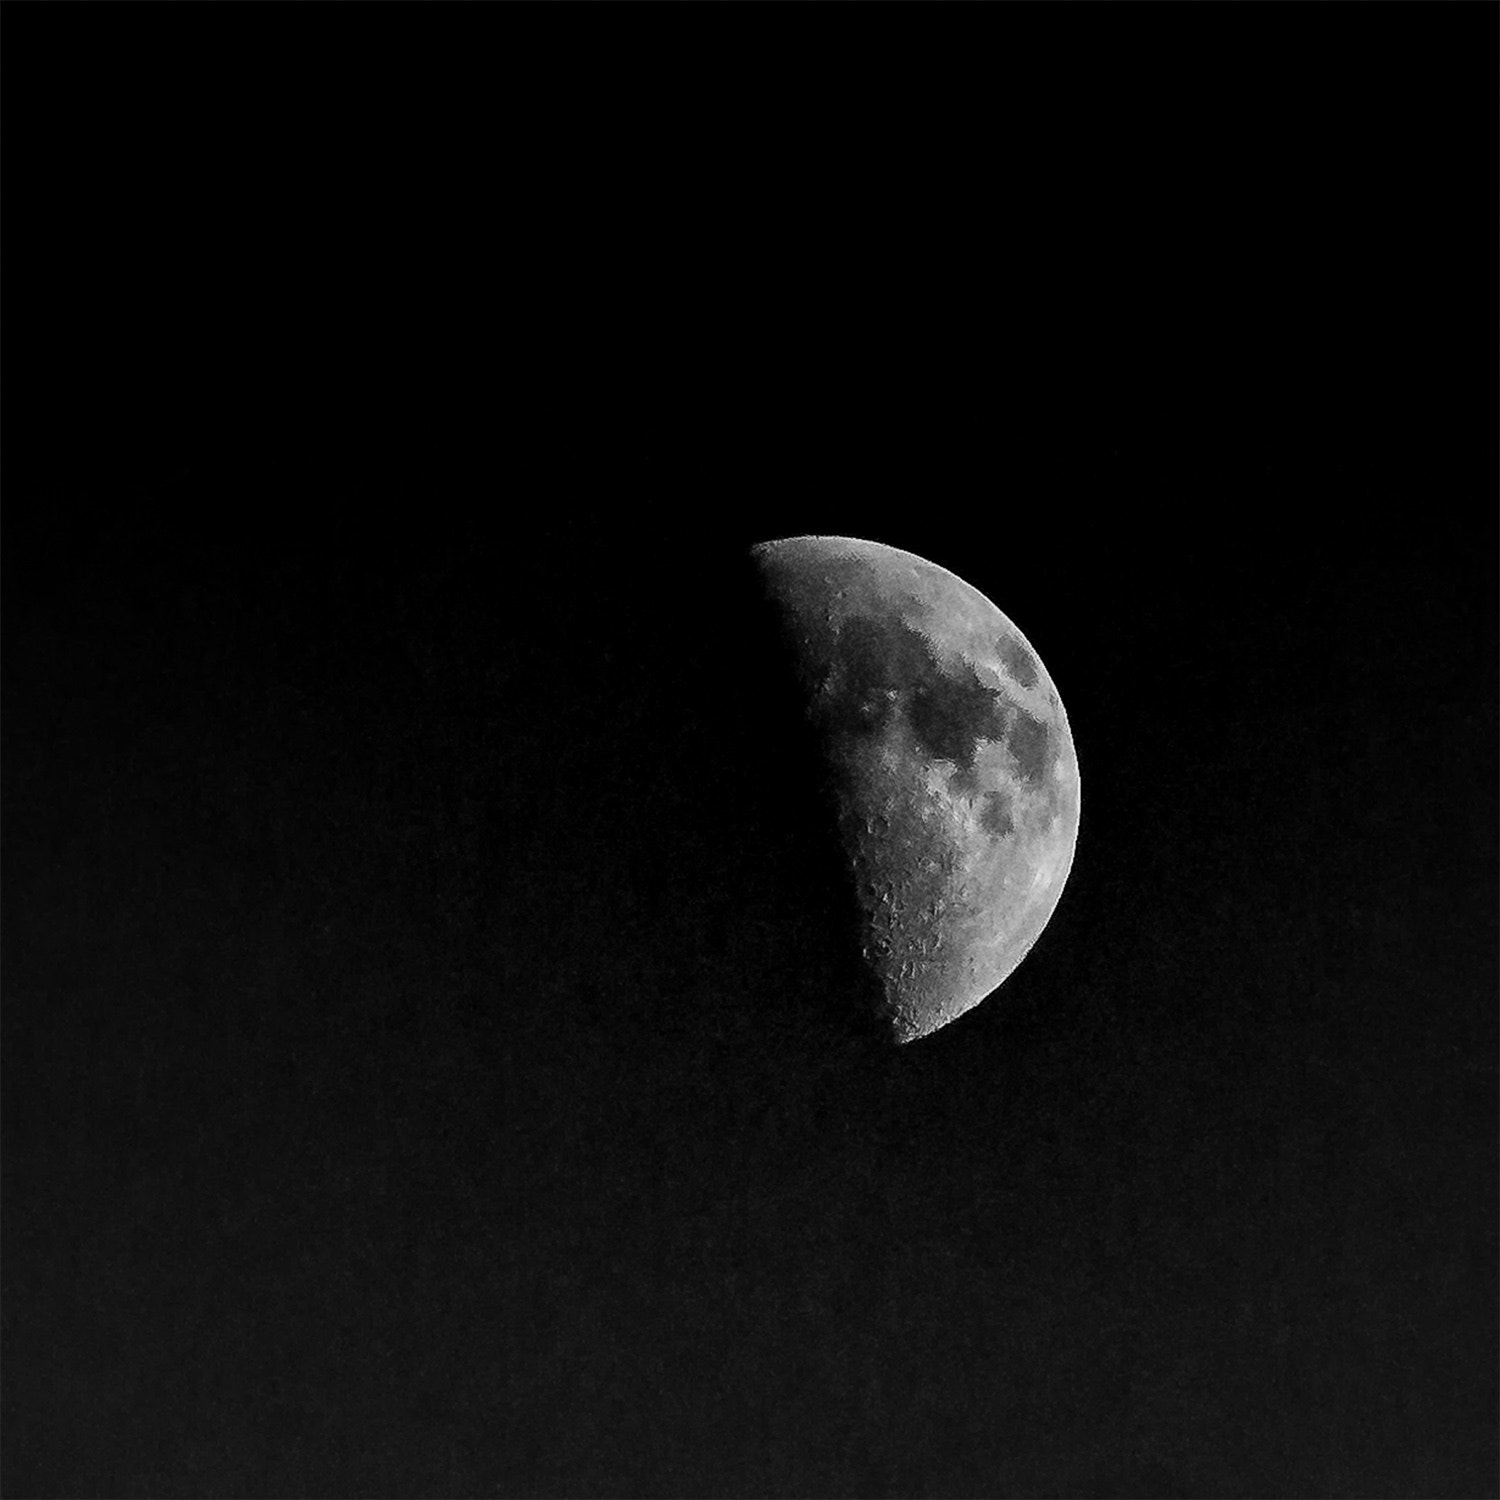 Canon EOS 70D sample photo. Half moon photography